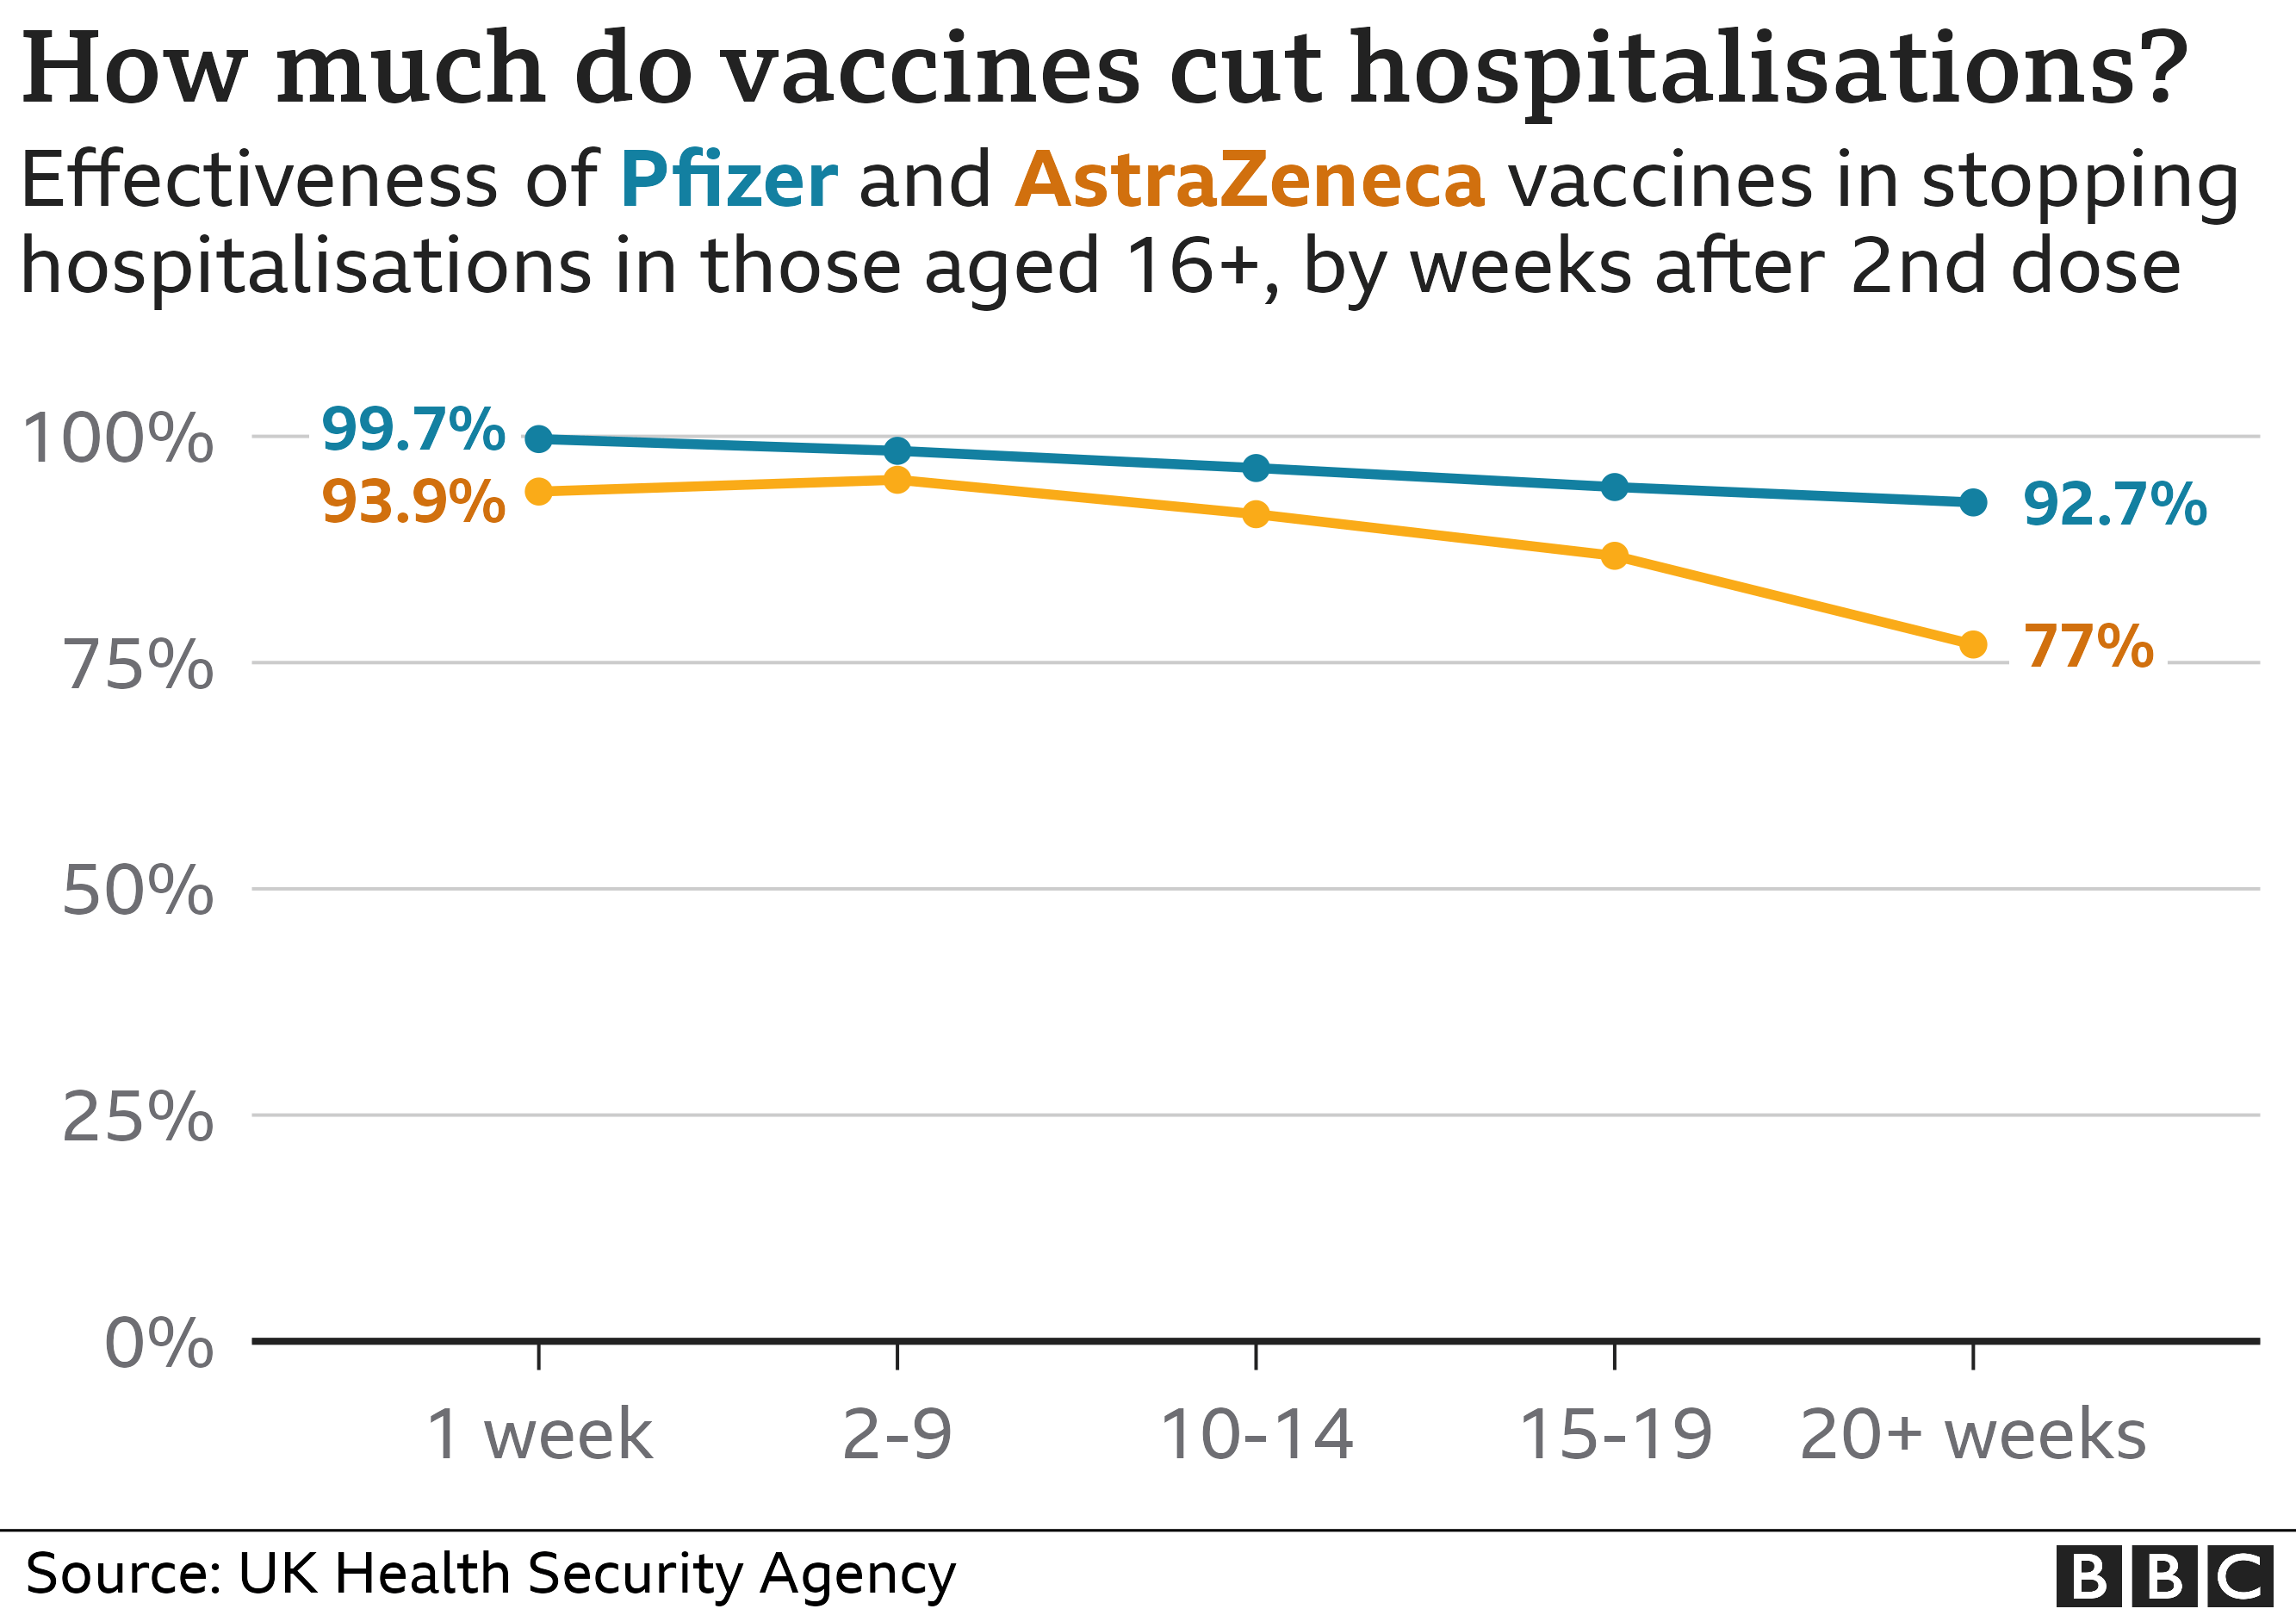 График: Насколько вакцины сокращают количество госпитализаций? - демонстрирует эффективность вакцин Pfizer и AstraZeneca в предотвращении госпитализаций в возрасте 16+ через несколько недель после 2-й дозы